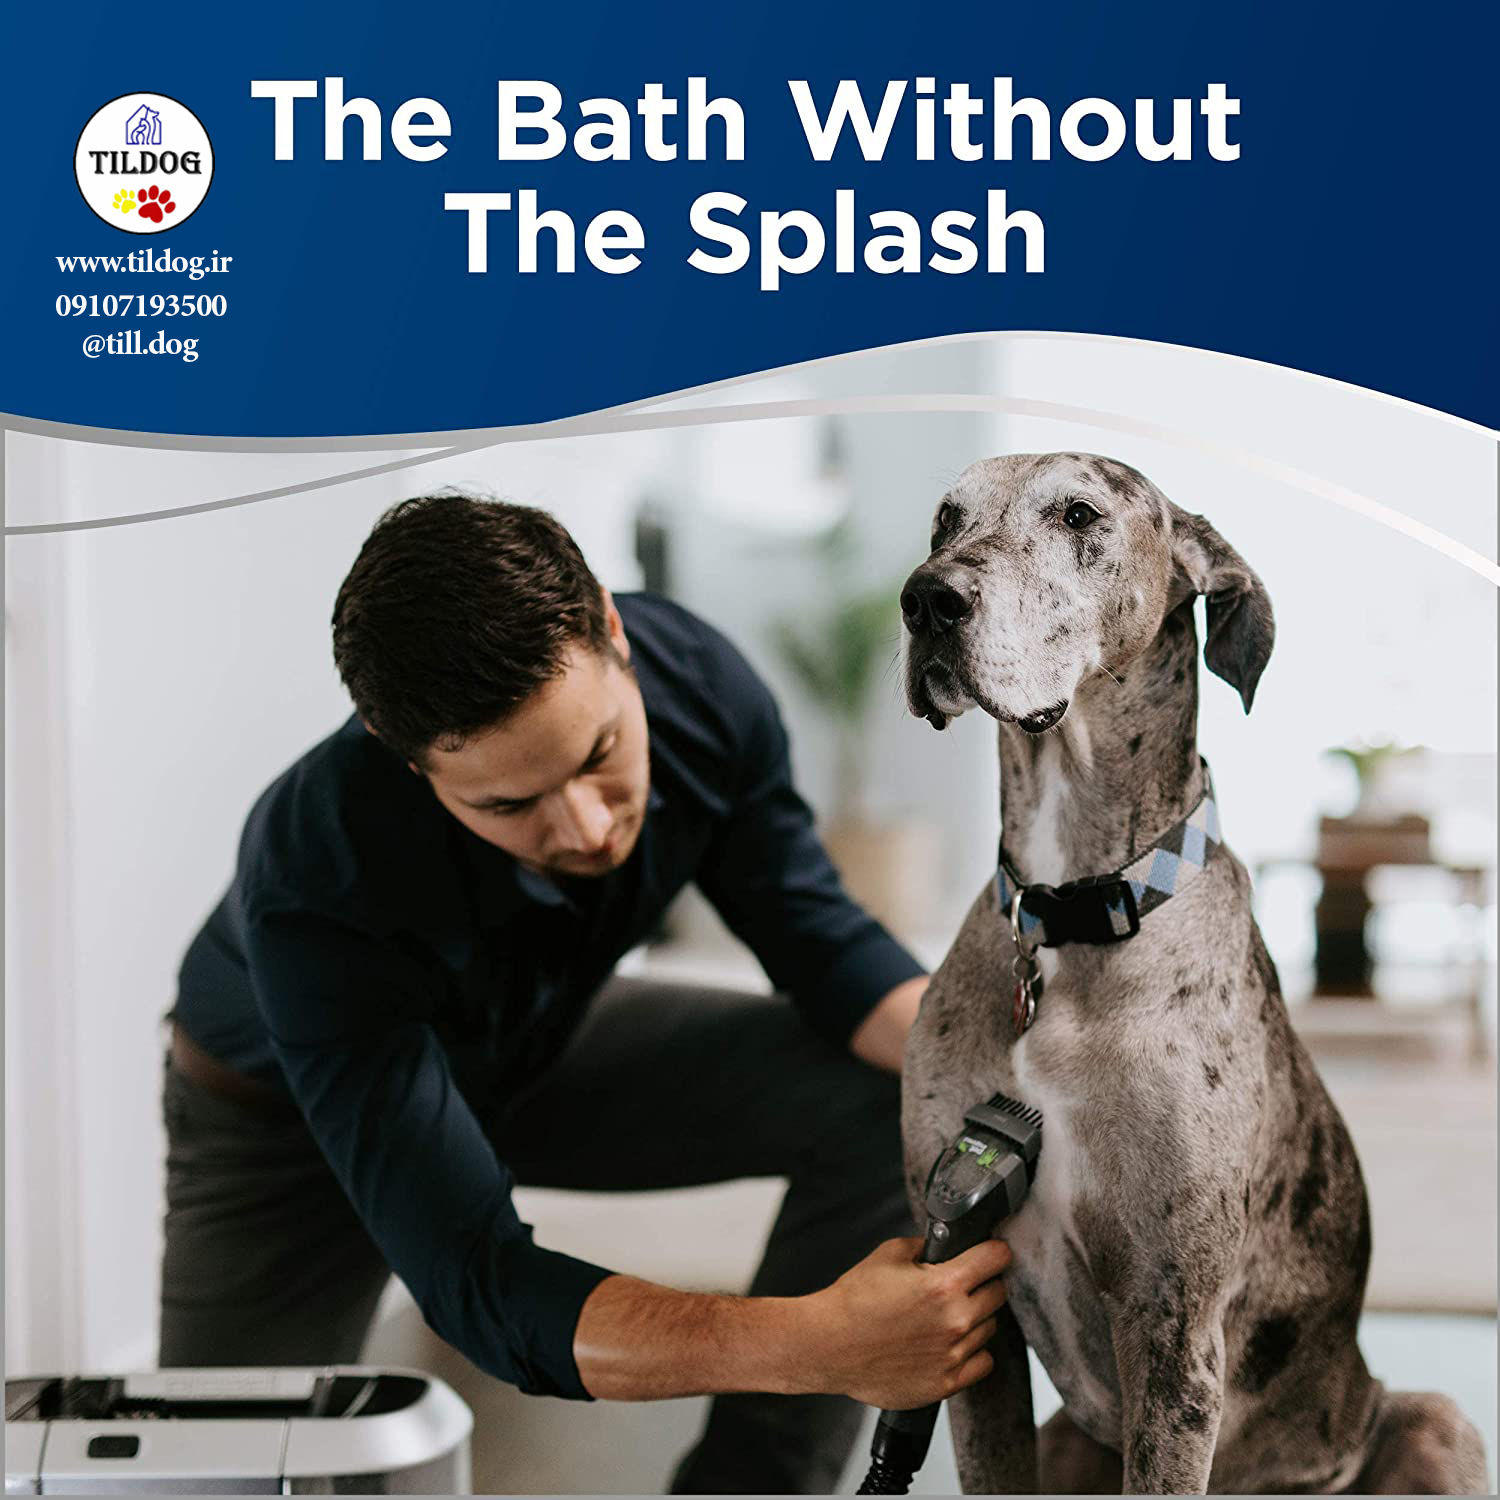 مخزن آب کثیف جداگانه می کشد. موی سگ خود را هنگام تمیز کردن برس بزنید.